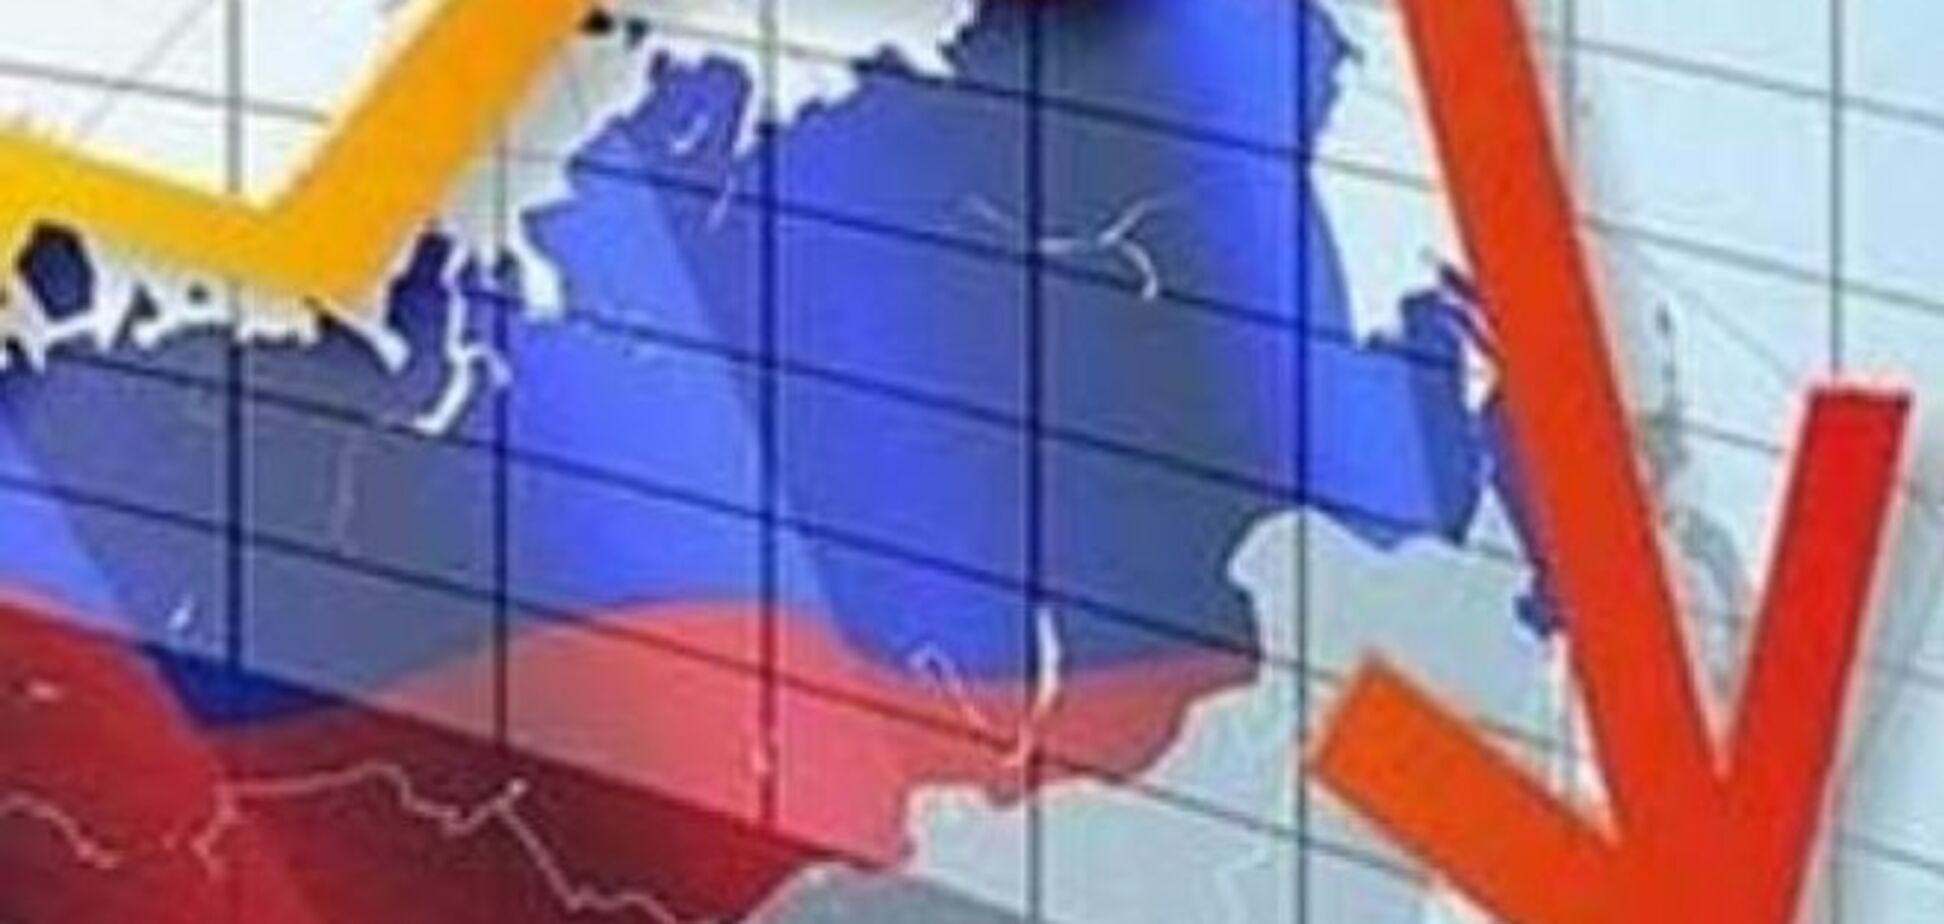 Российский финансист: РФ 'поставлена на счетчик' и получит иски на сотни миллиардов